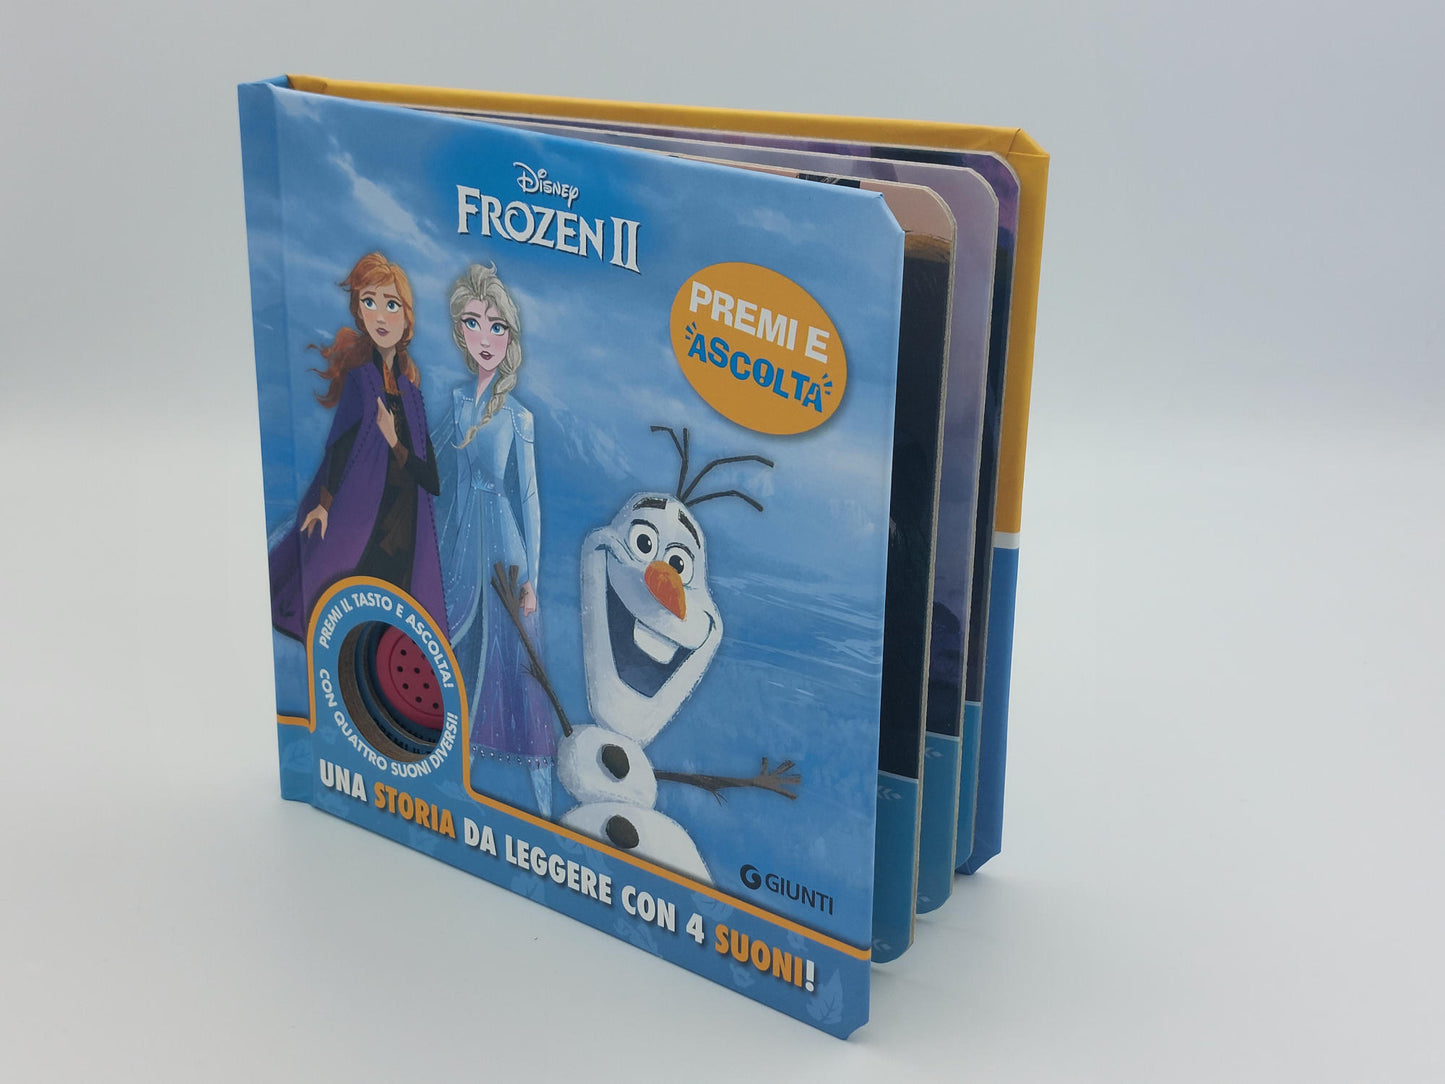 Disney Frozen 2 Premi e ascolta - Una storia da leggere con 4 suoni!::Premi il tasto e ascolta! Con 4 suoni diversi!